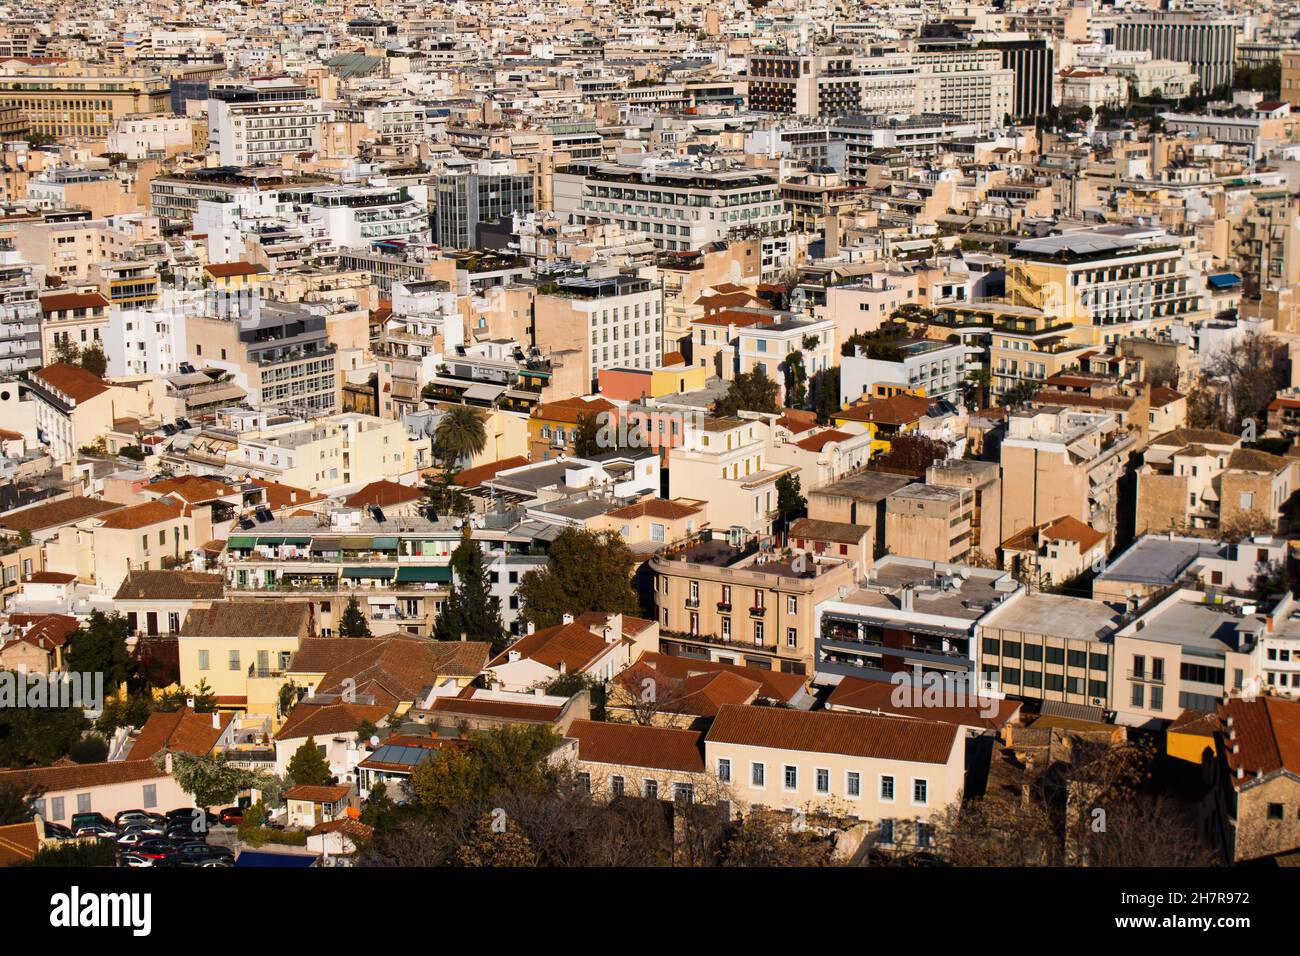 Atenas, Grecia - 22 de noviembre de 2021 Vista panorámica de edificios y paisajes urbanos de Atenas, ciudad emblemática y capital de Grecia Foto de stock